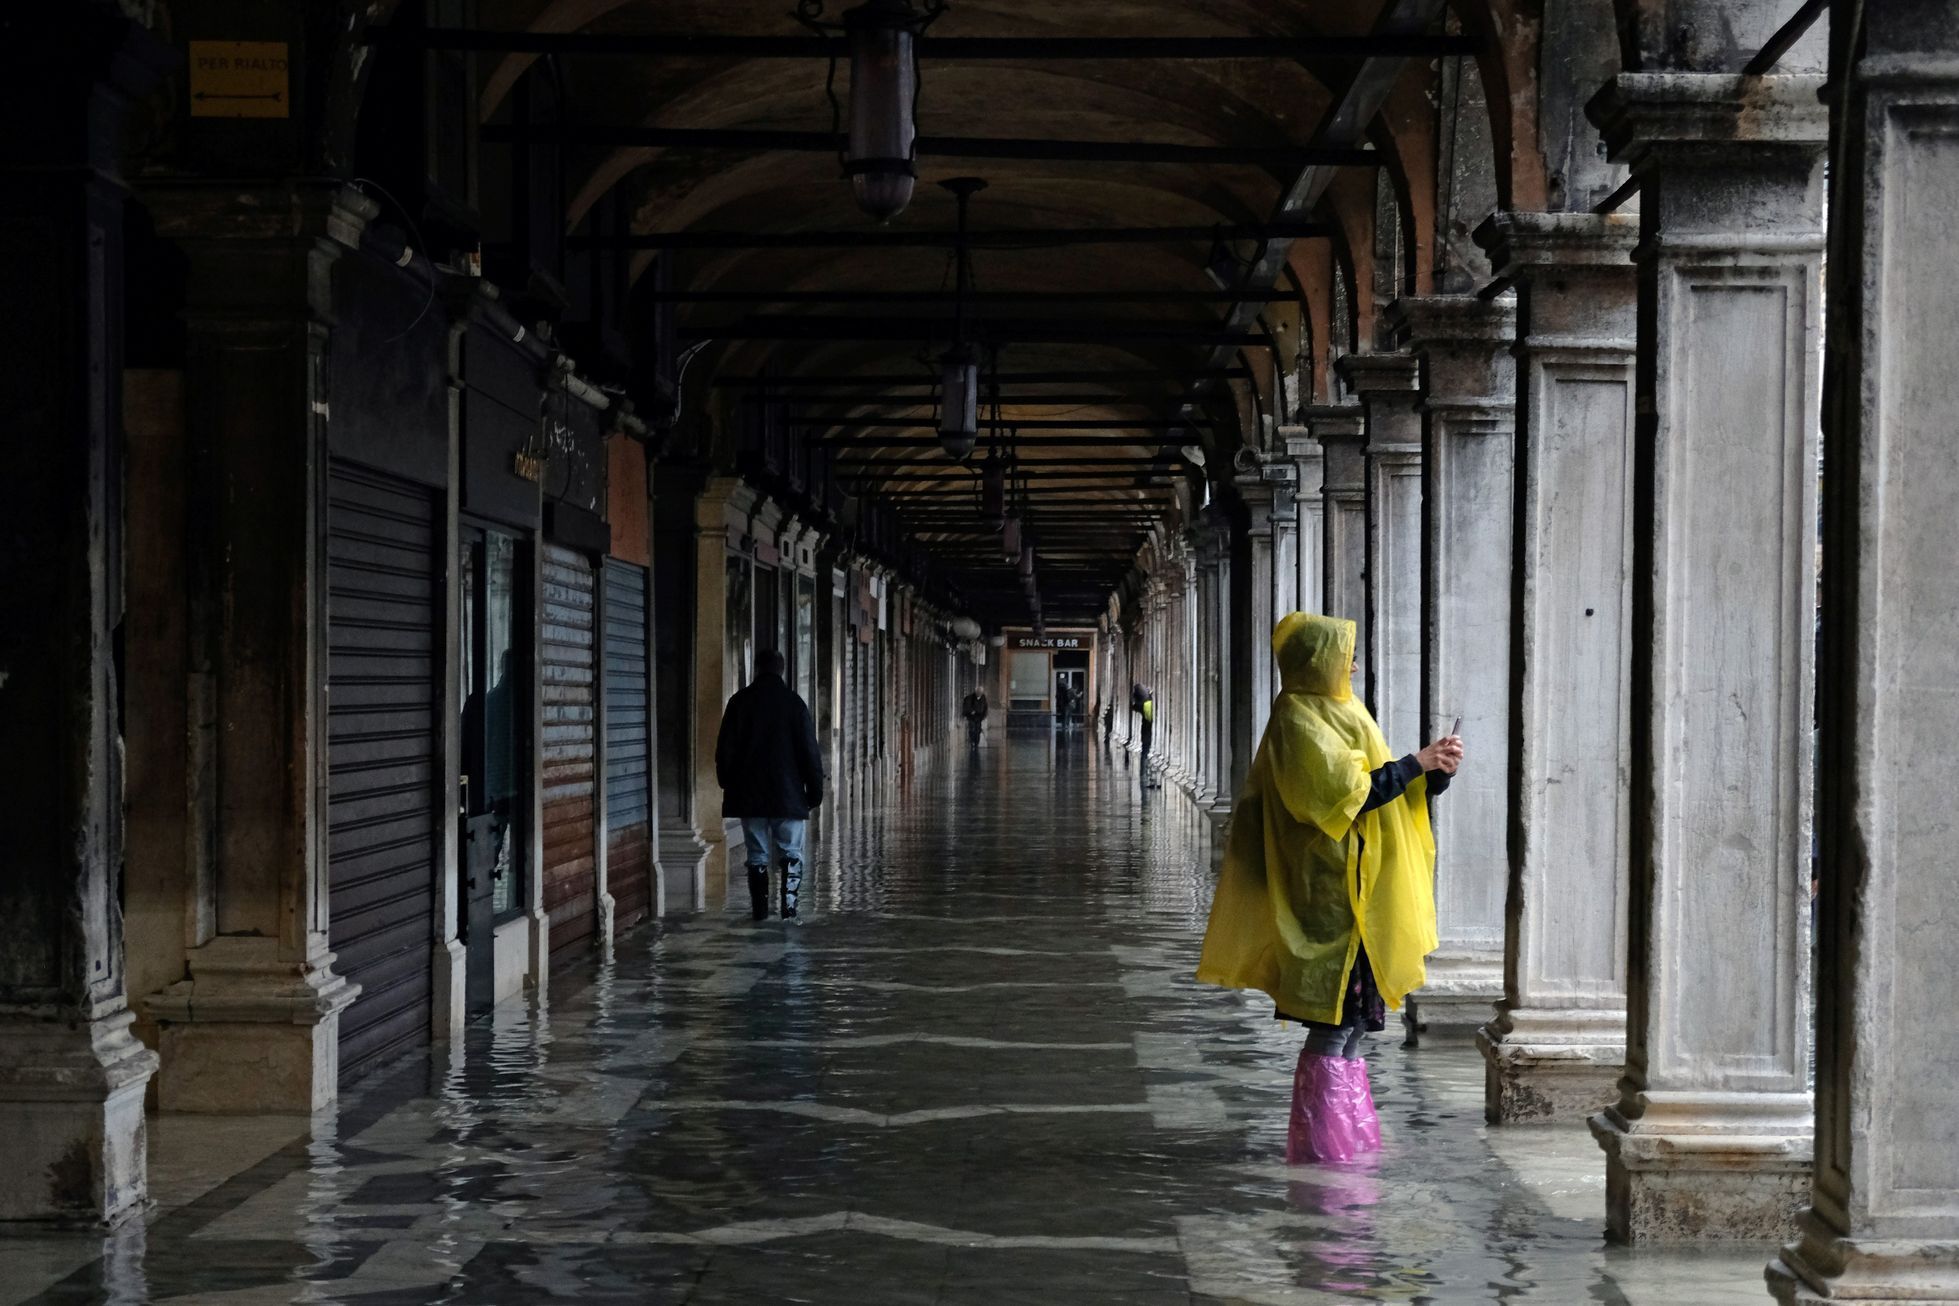 Benátky povodeň 17. listopadu